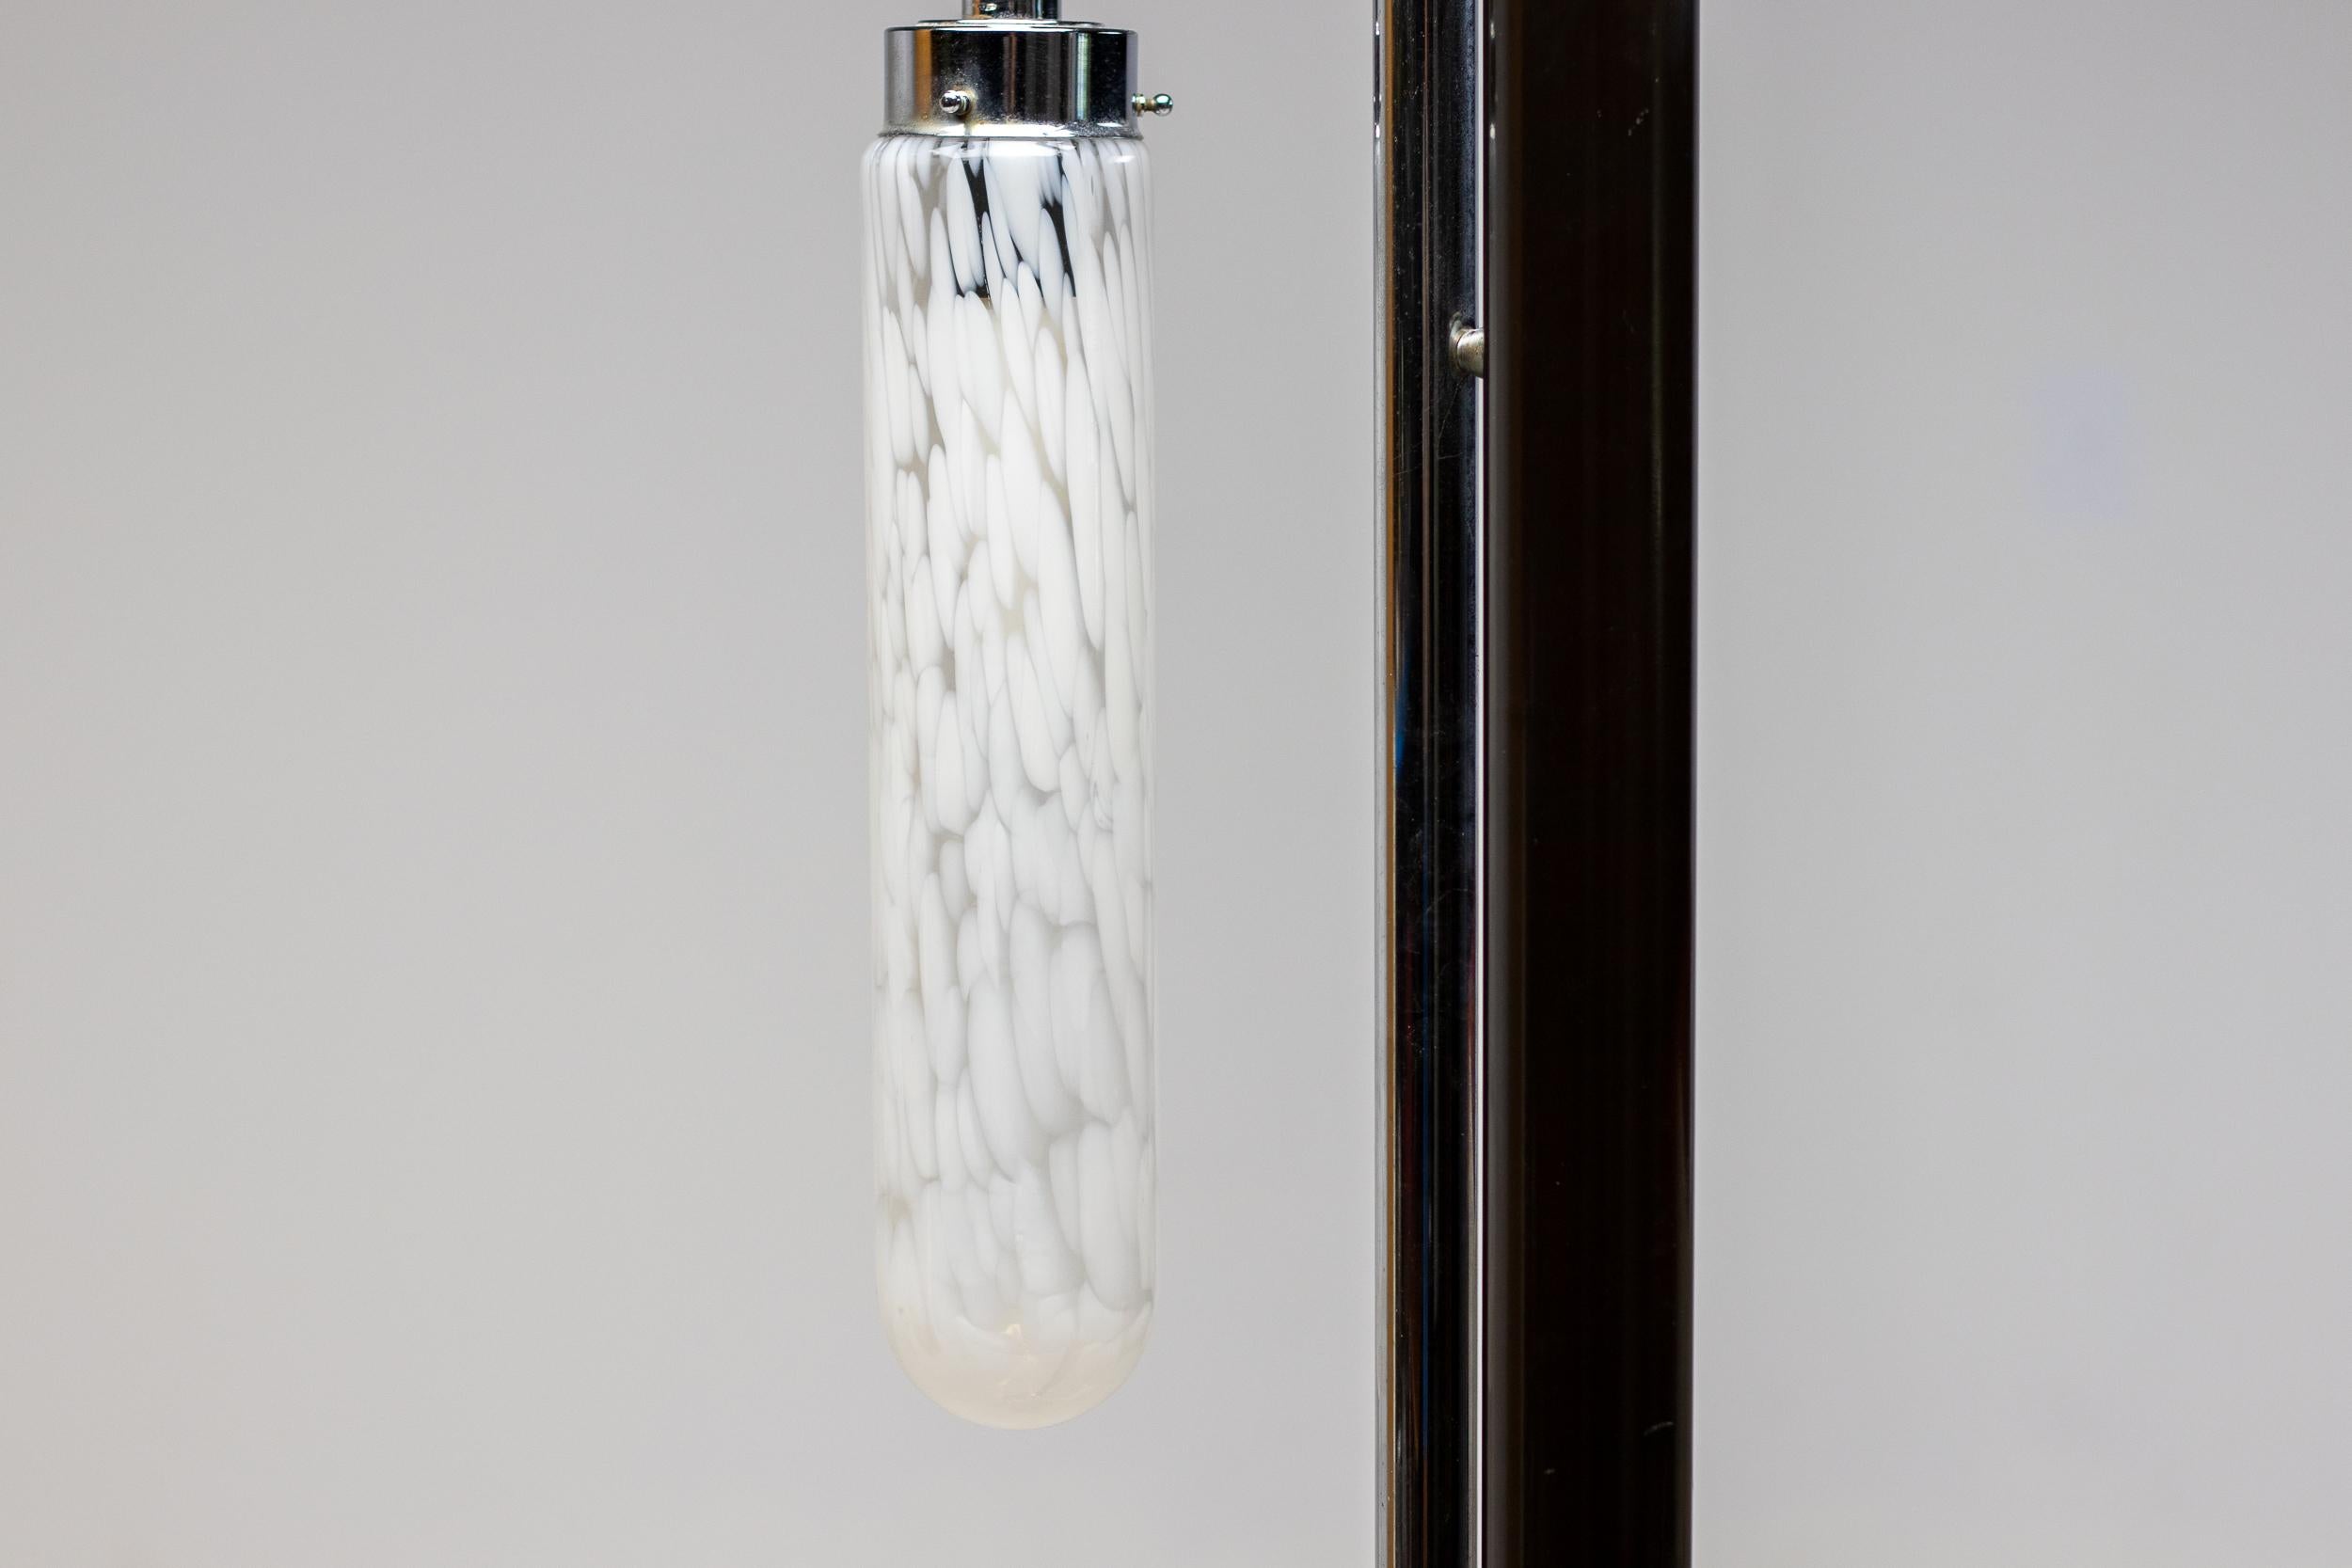 Spektakuläre italienische Stehleuchte, entworfen 1970 von Carlo Nason für A. V. Mazzega.
Eine runde, schwarz emaillierte Stahlsäule auf einem schönen braunen Marmorsockel trägt einen Chromrahmen mit mundgeblasenen Murano-Glasschirmen.
Die